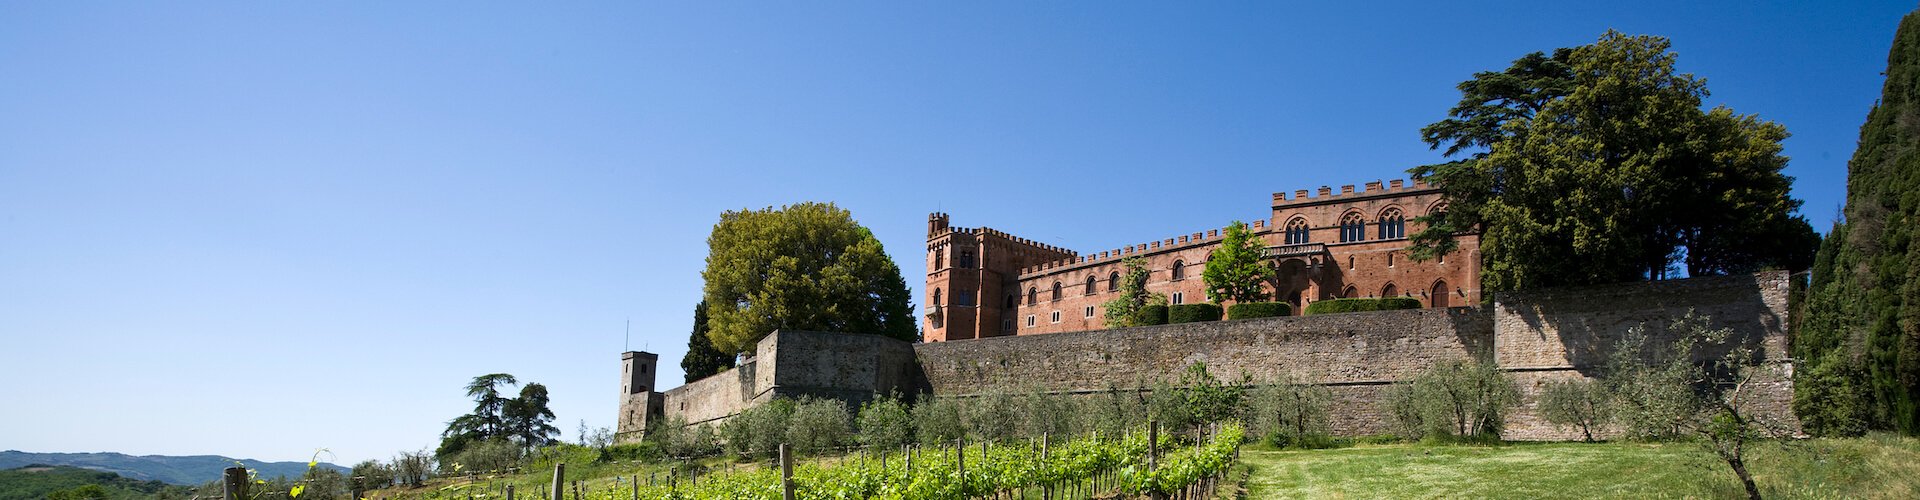 Ausflugsziel Castello di Brolio